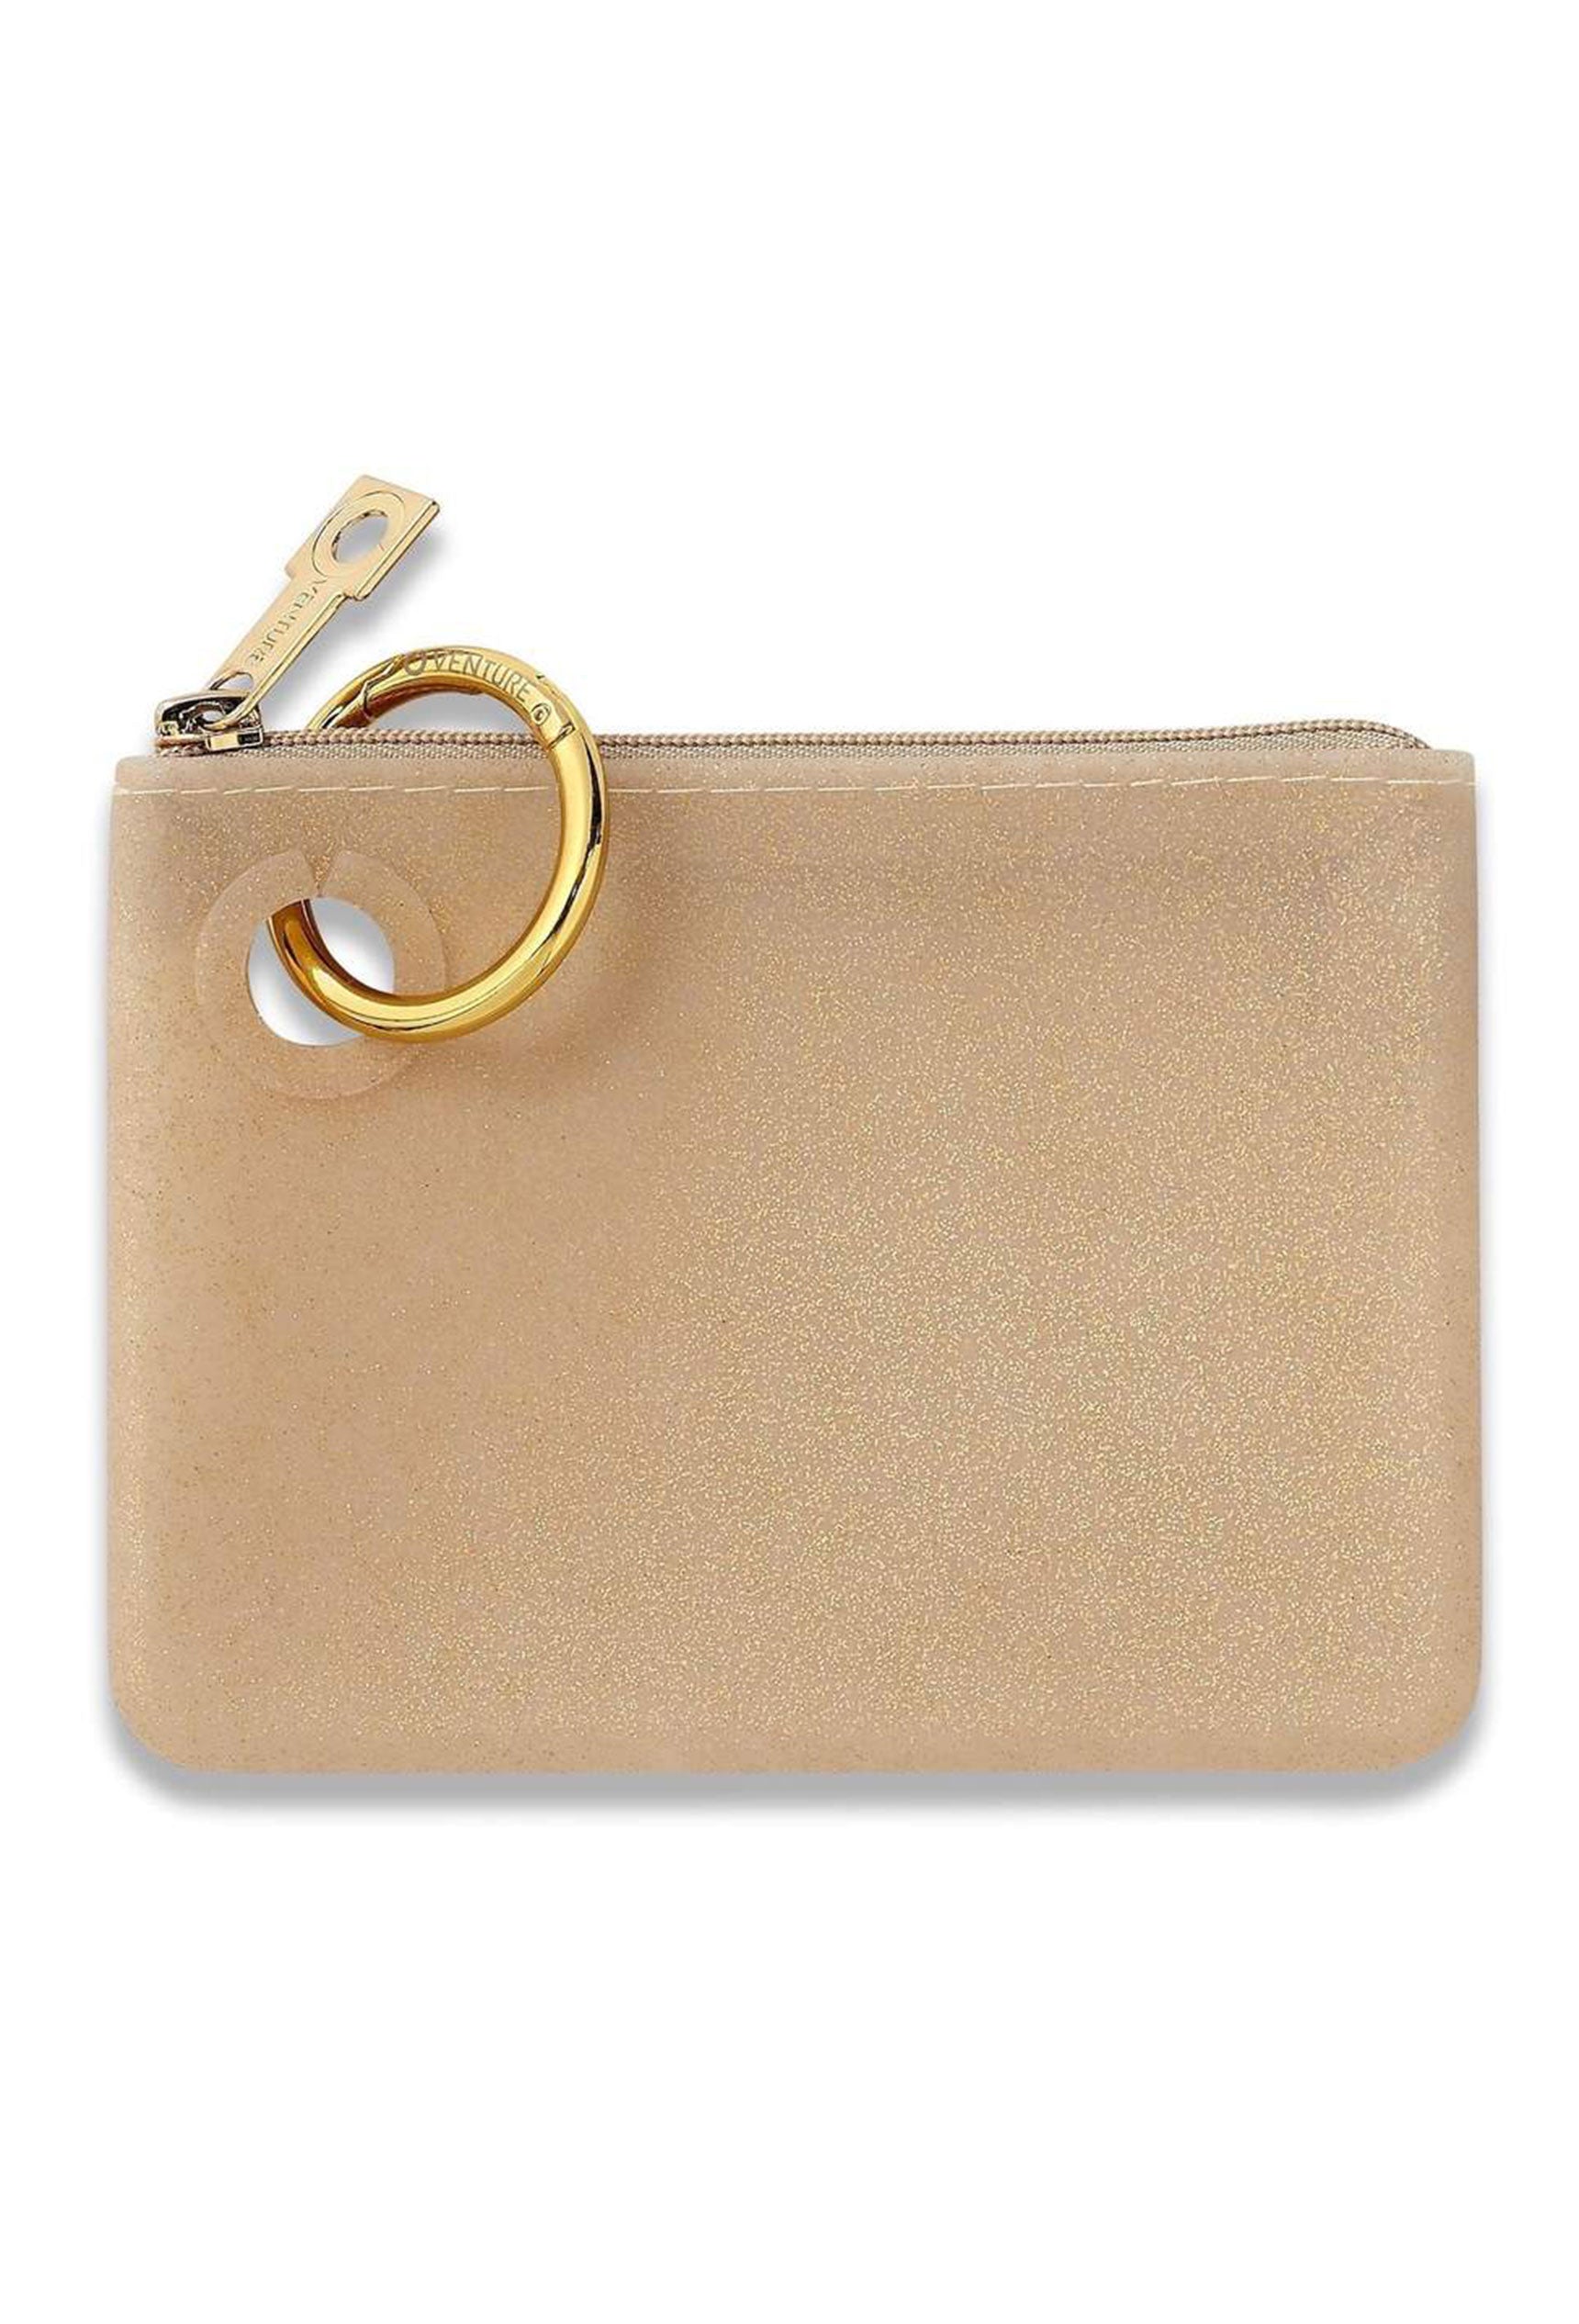 O-Venture Mini Silicone Pouch in Gold Rush Confetti, gold mini silicone id key pouch 